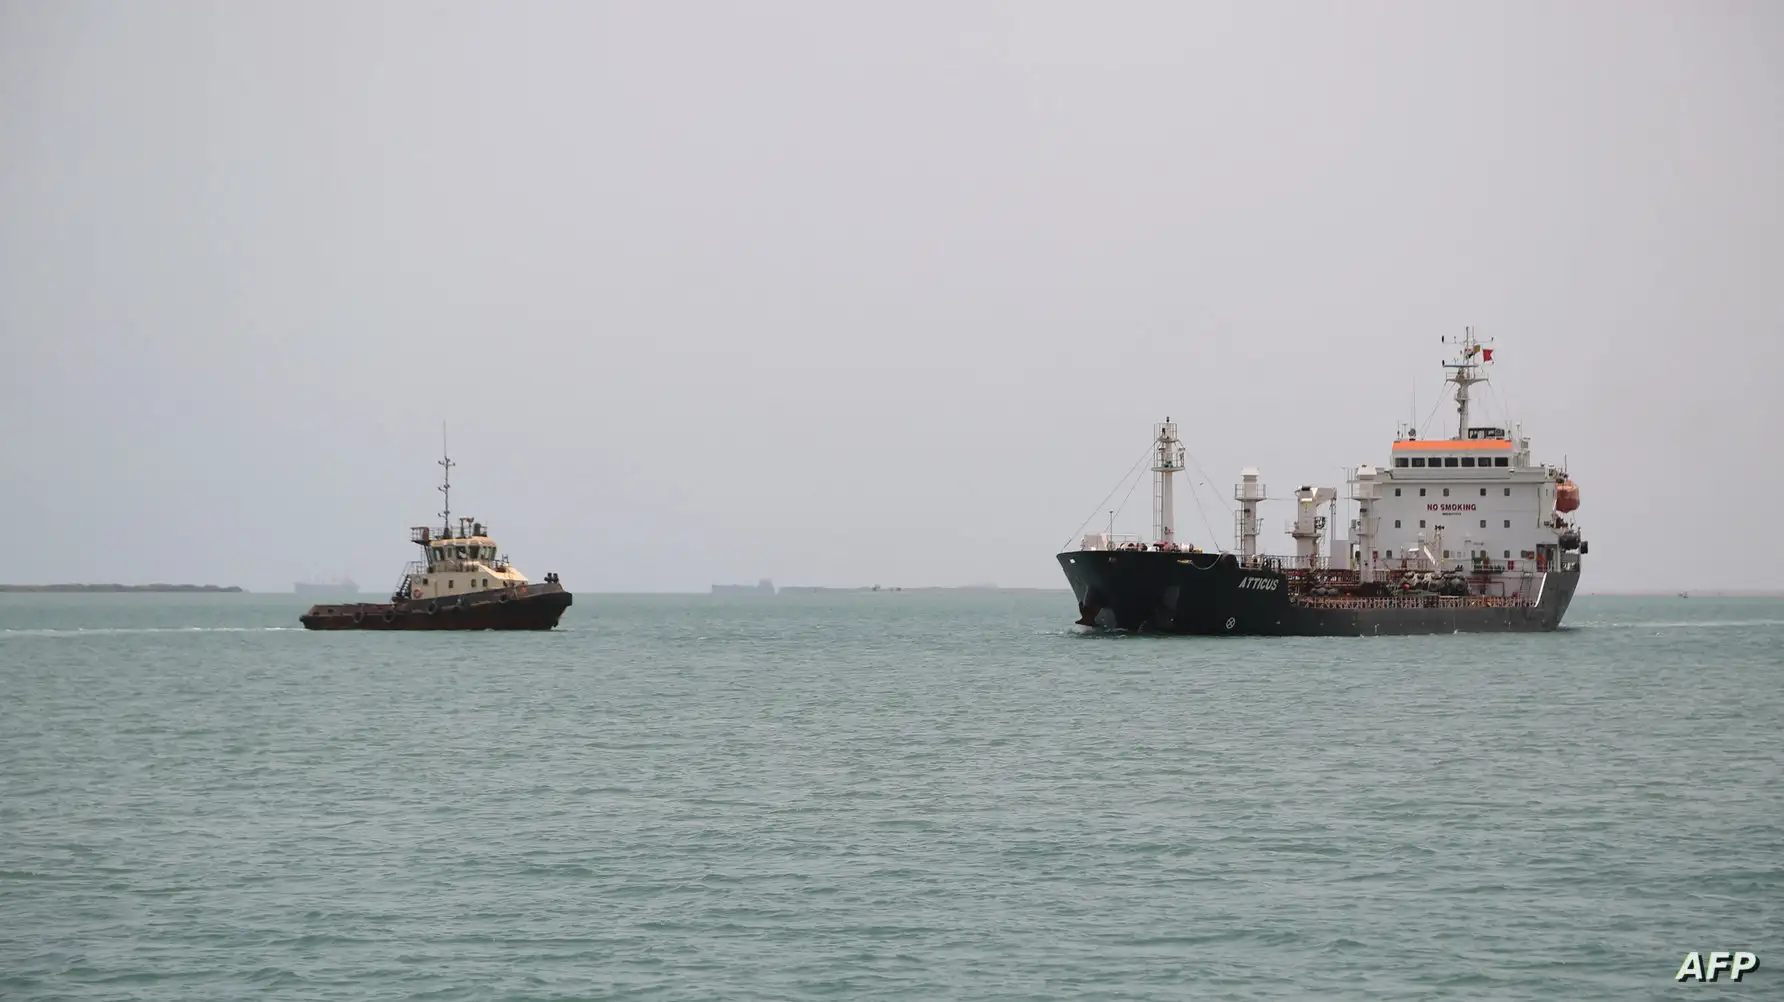 سنتكوم: أضرار في سفينة بريطانية استهدفها الحوثيون بـ 3 صواريخ باليستية